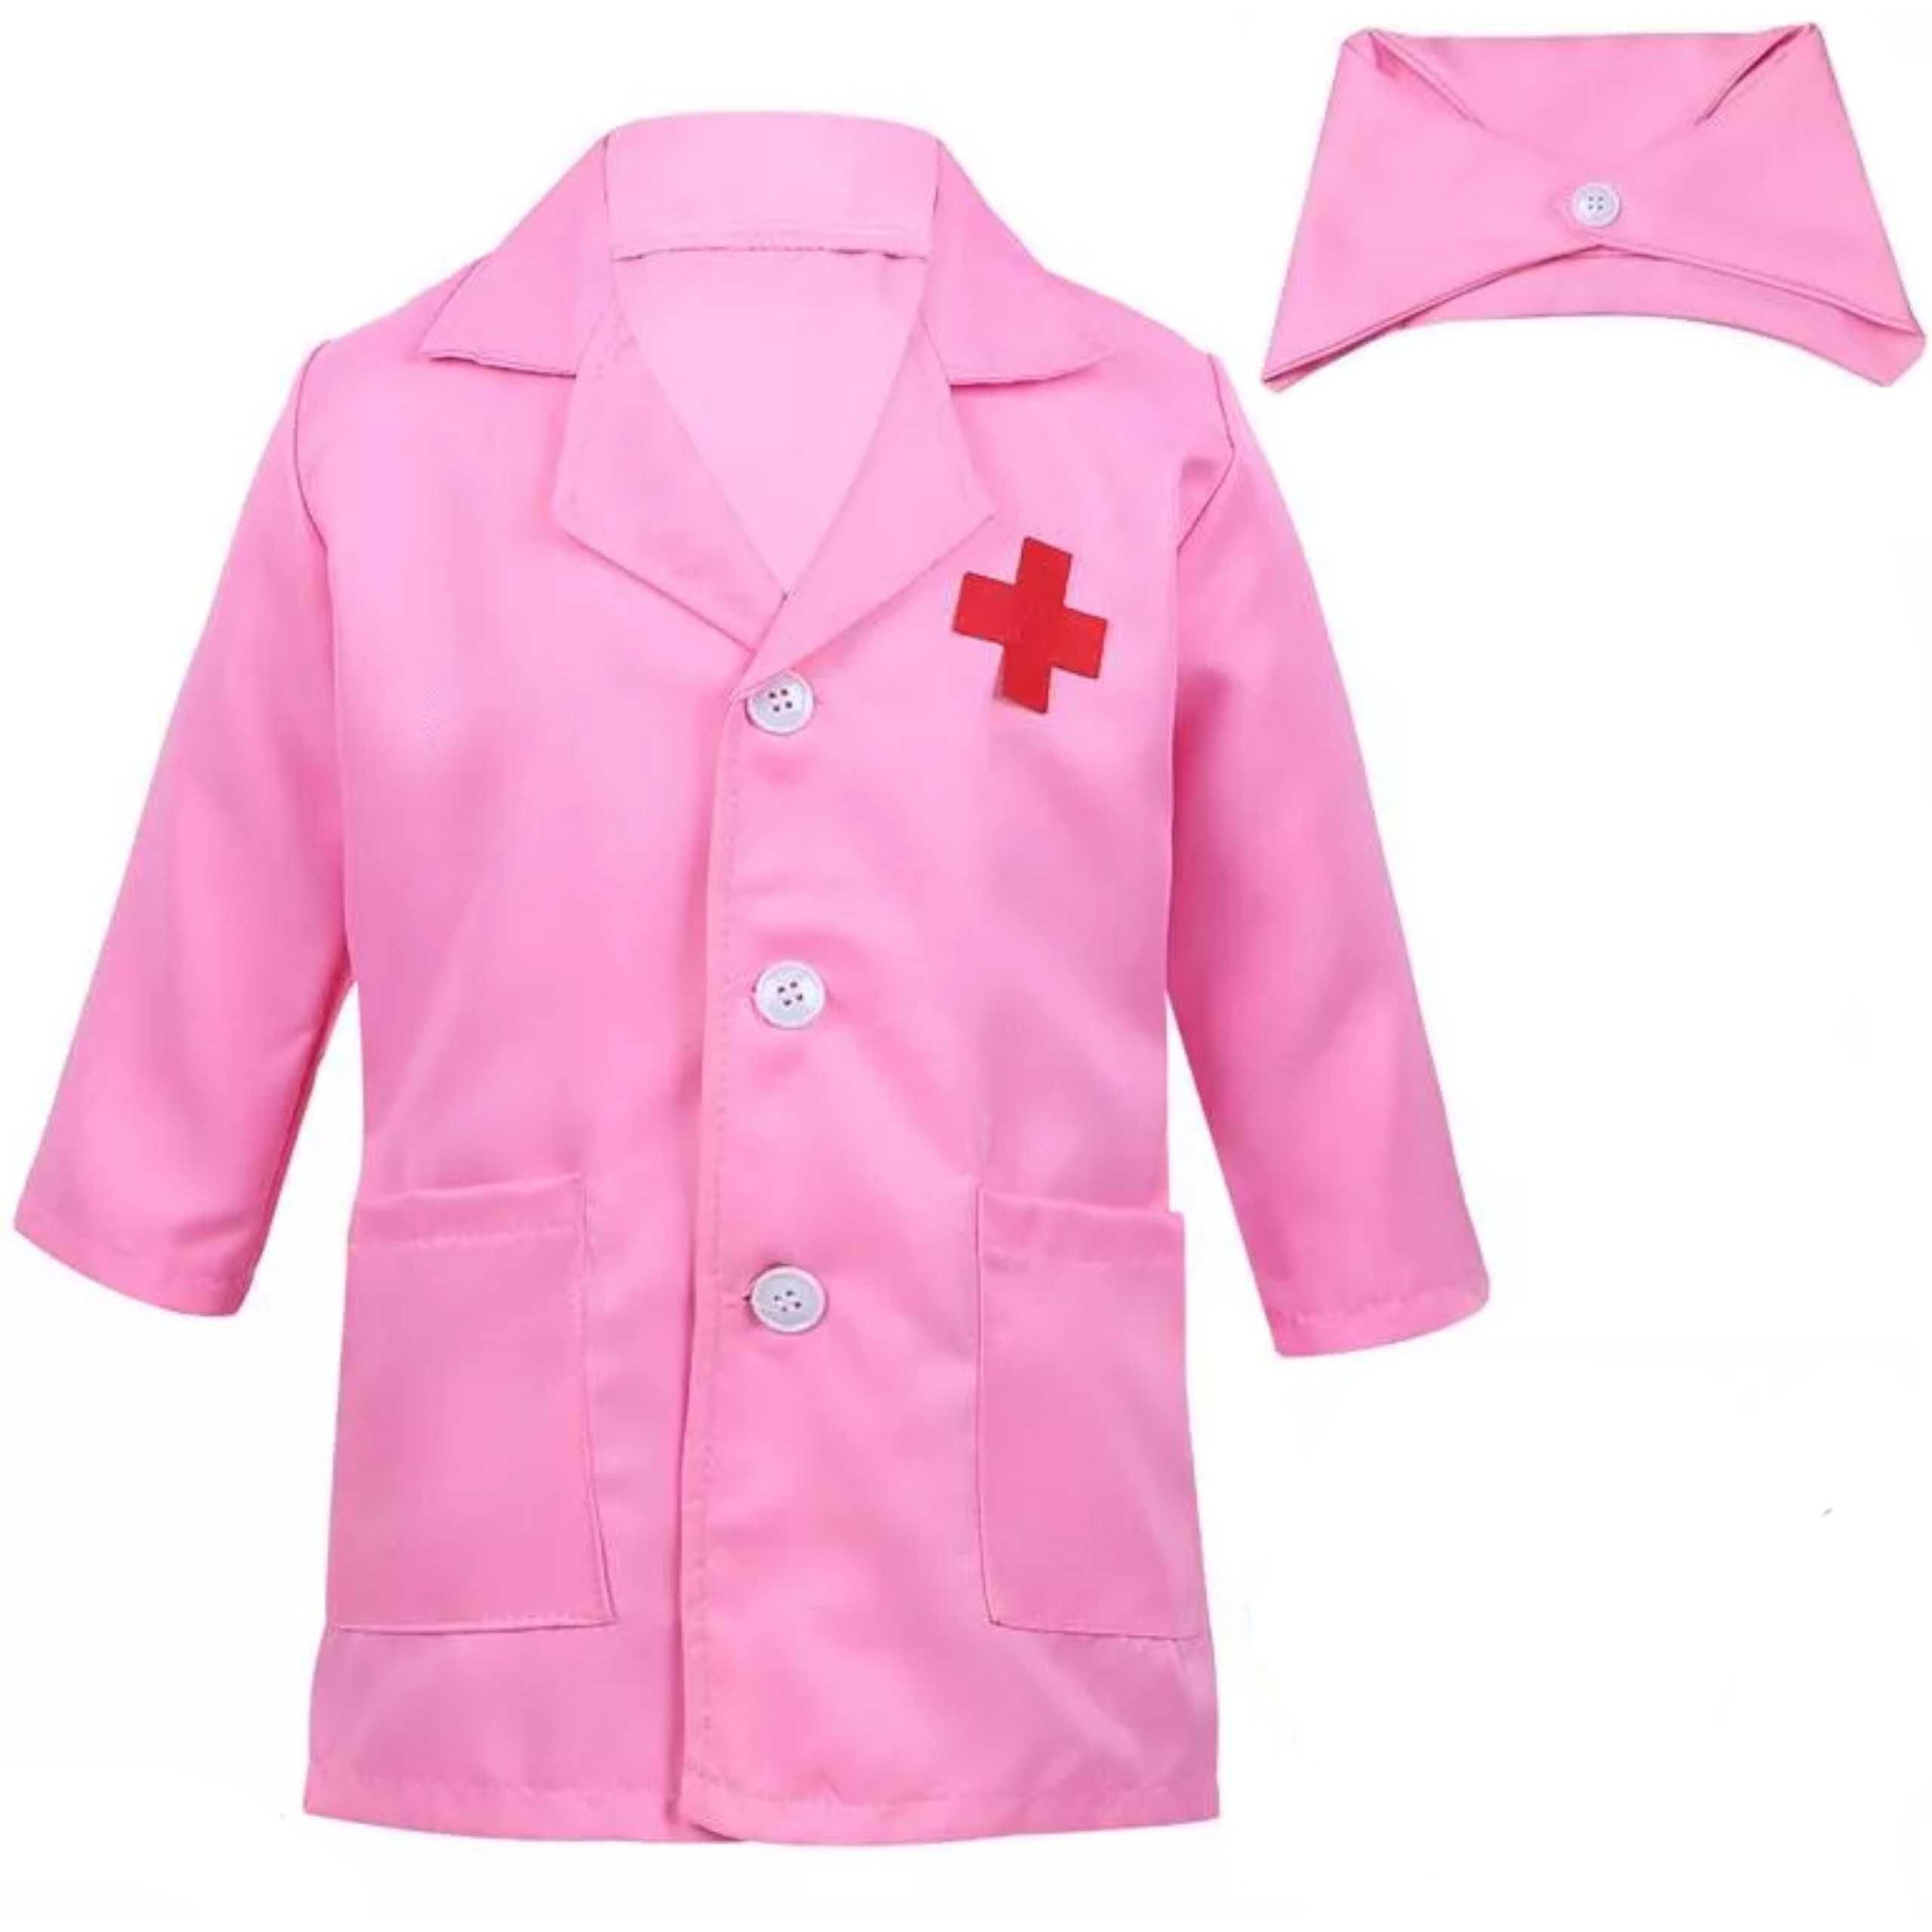 Strój pielęgniarki kostium przebranie + akcesoria No.:218-7R